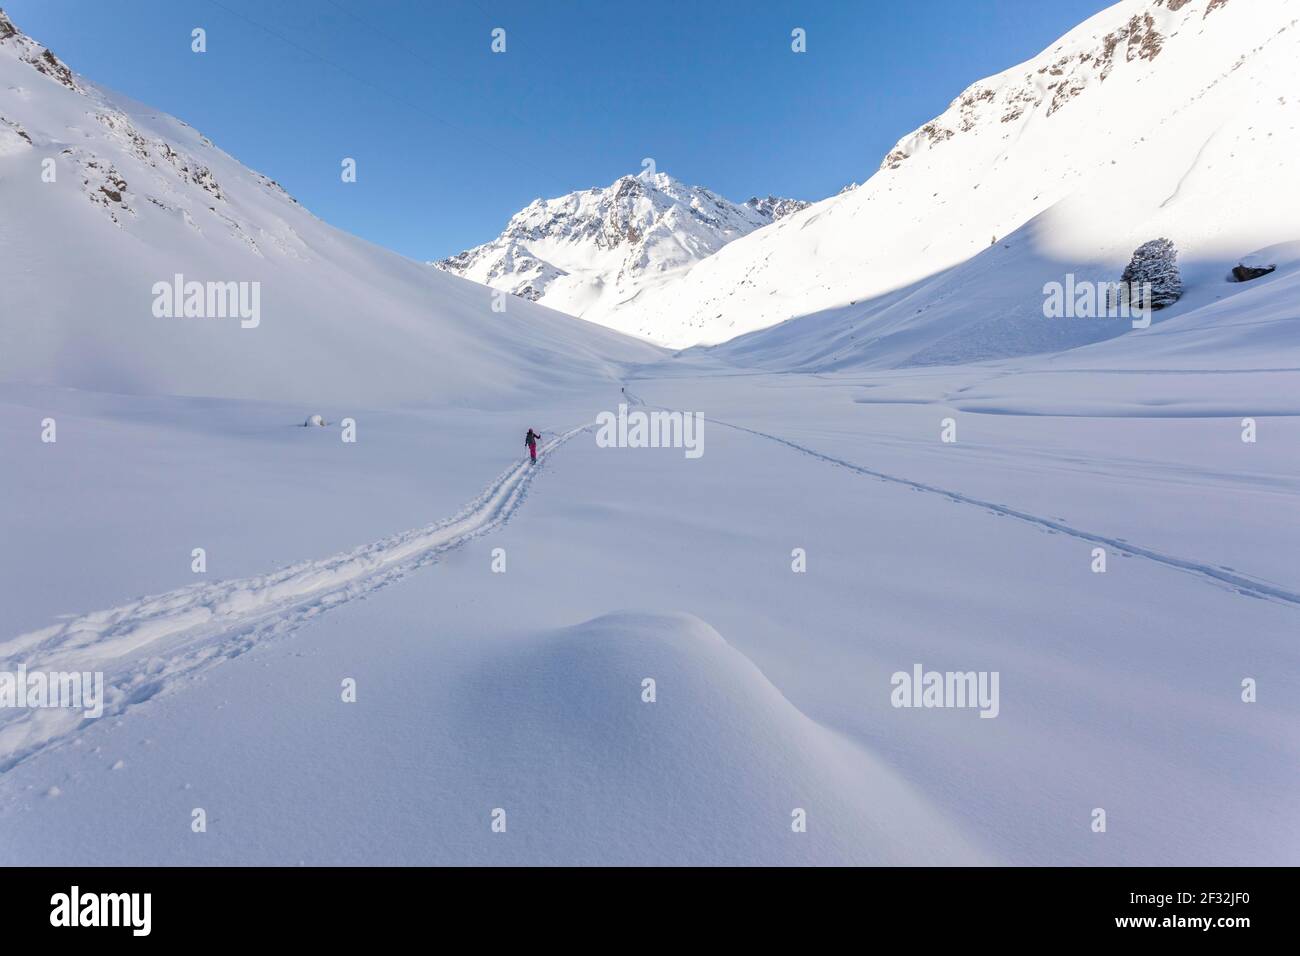 Lonely ski tourer, touring area Westfalenhaus, Sellrain, Tyrol, Austria Stock Photo